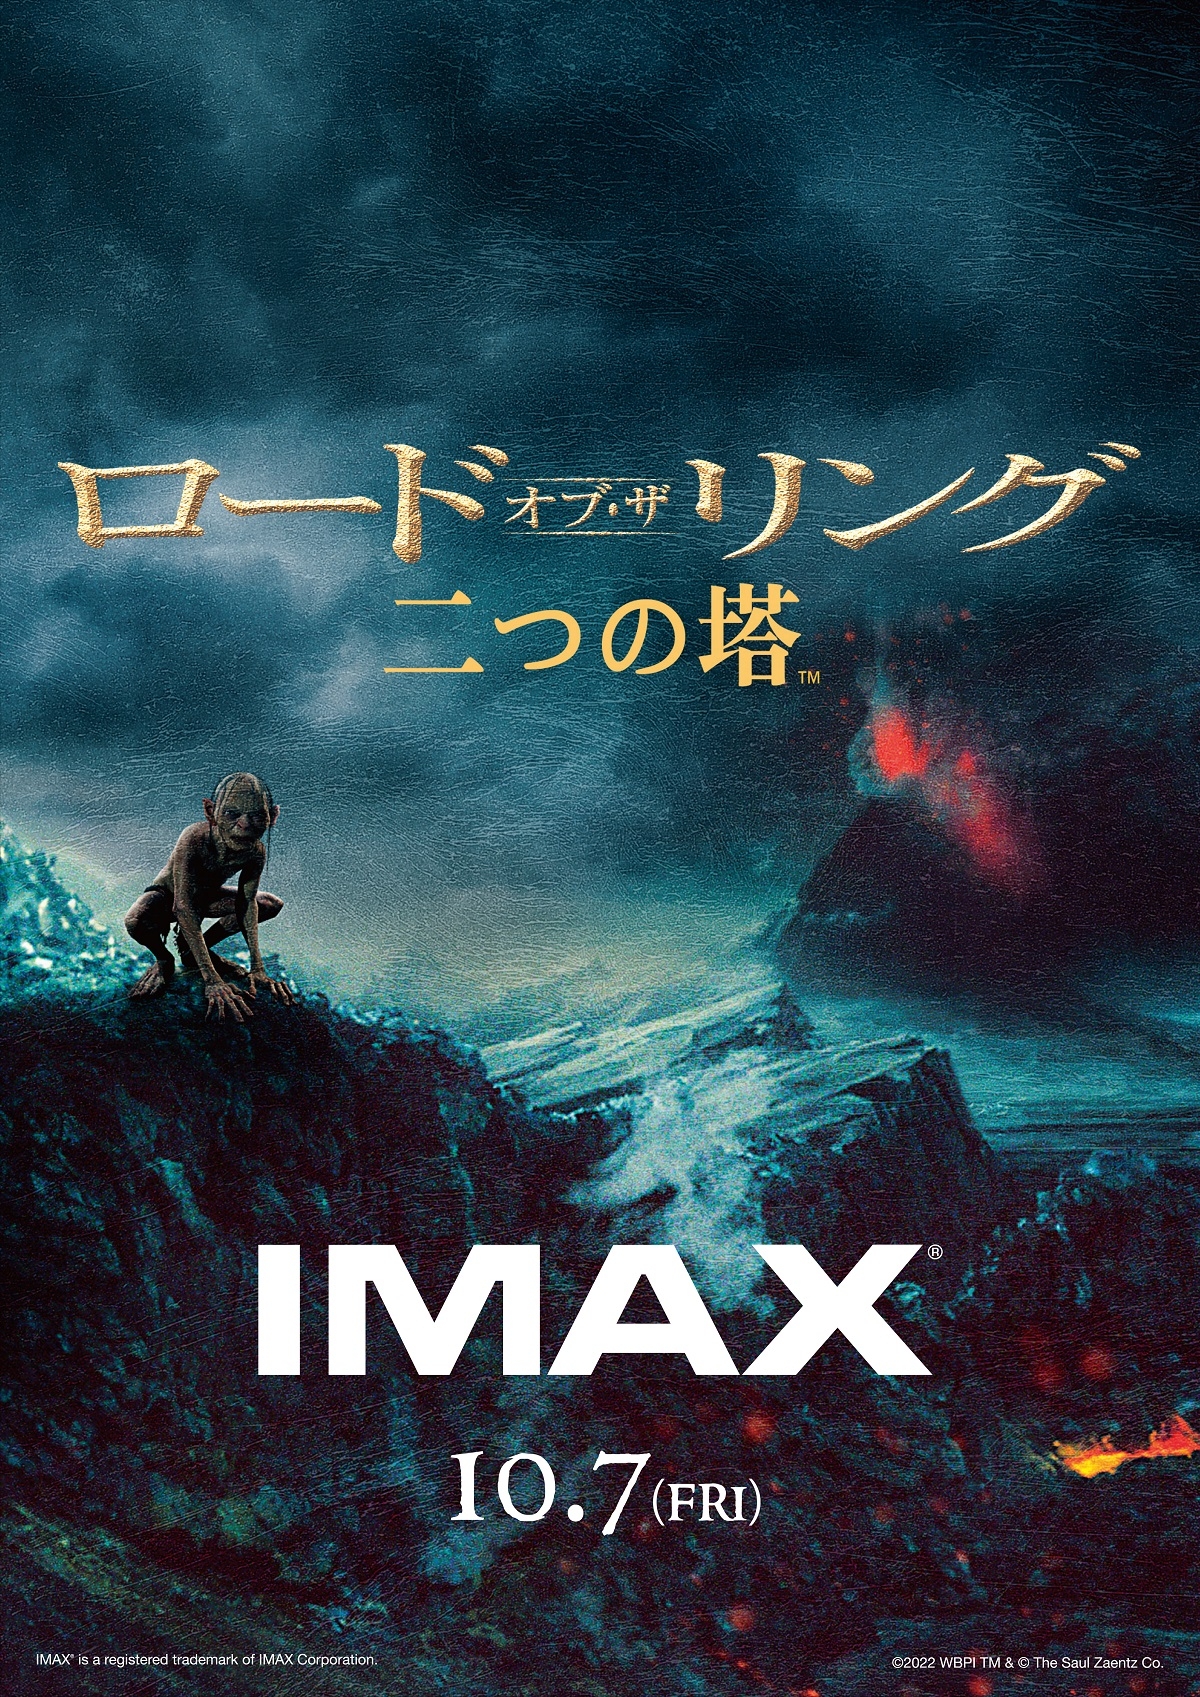 「ロード・オブ・ザ・リング」シリーズ3部作、IMAXでの公開日が 